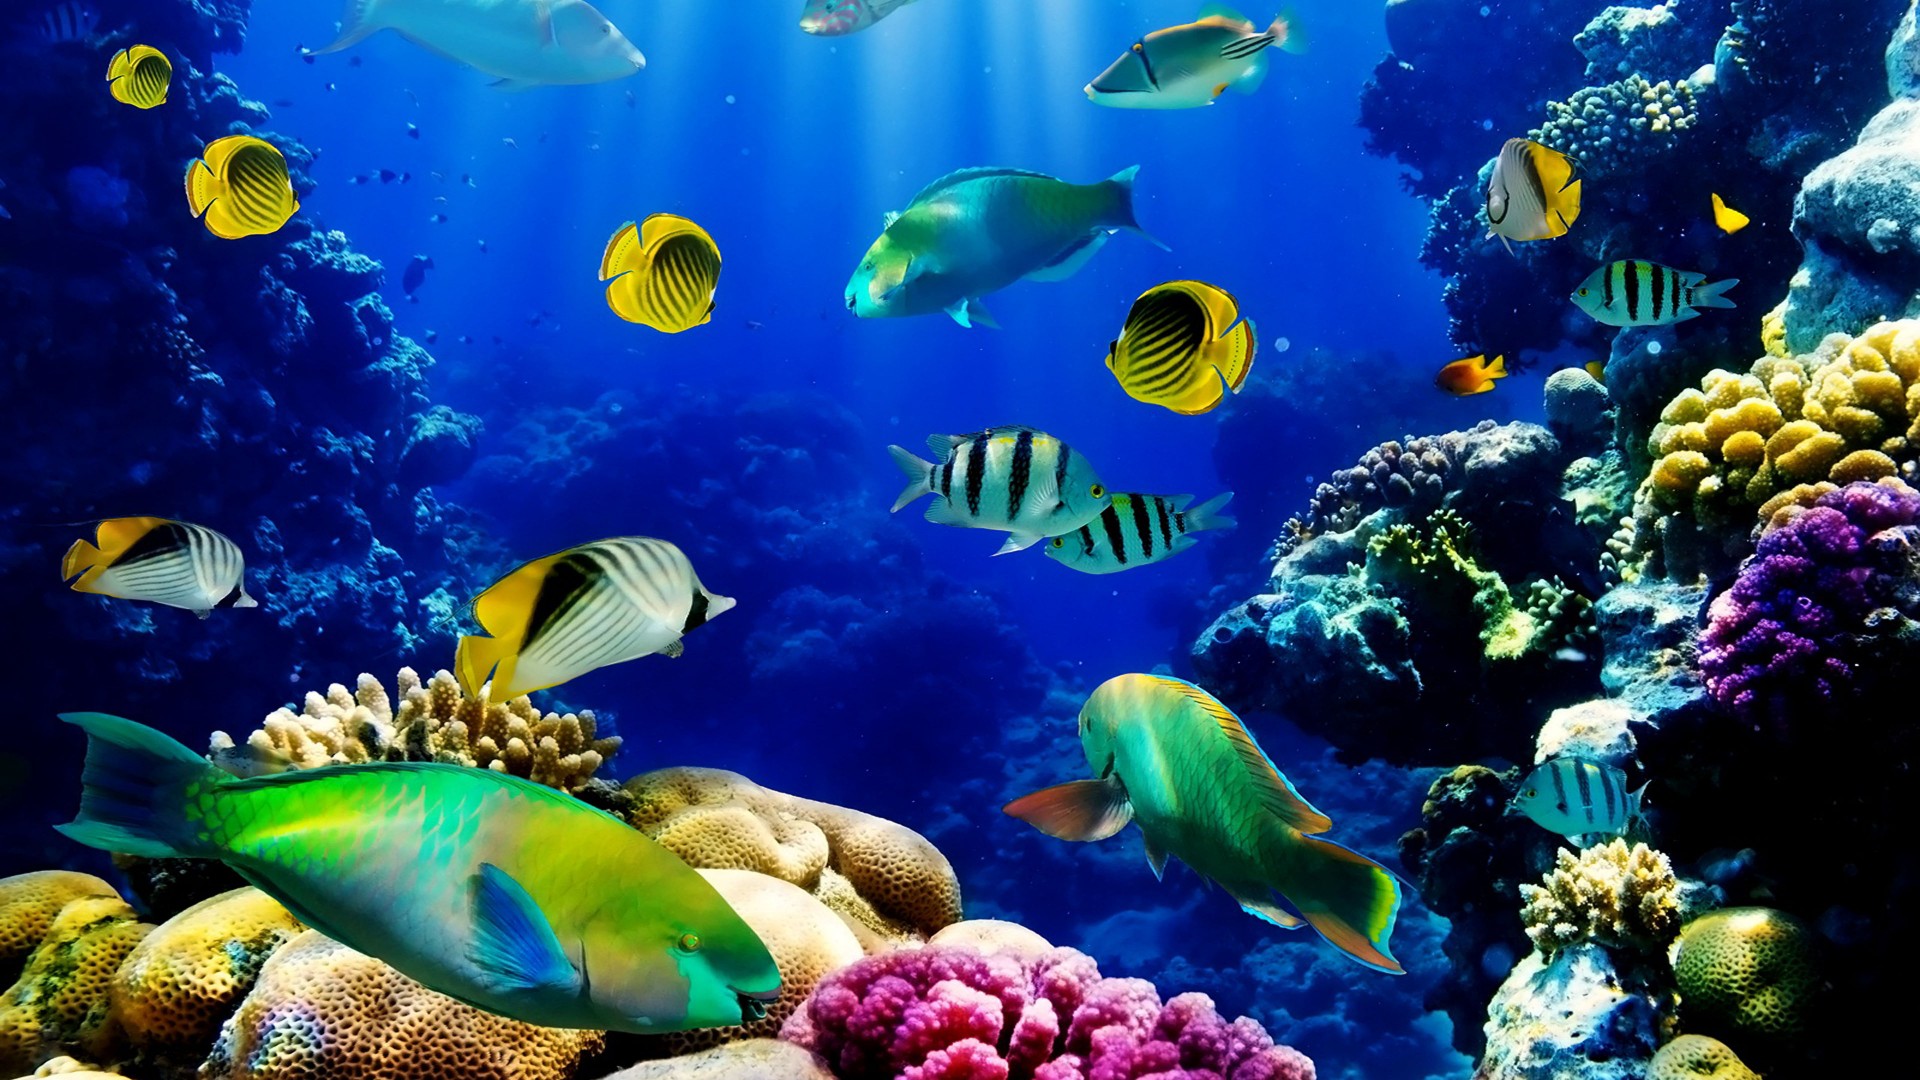 ozean hd live wallpaper,unter wasser,korallenriff,meeresbiologie,korallenrifffische,riff